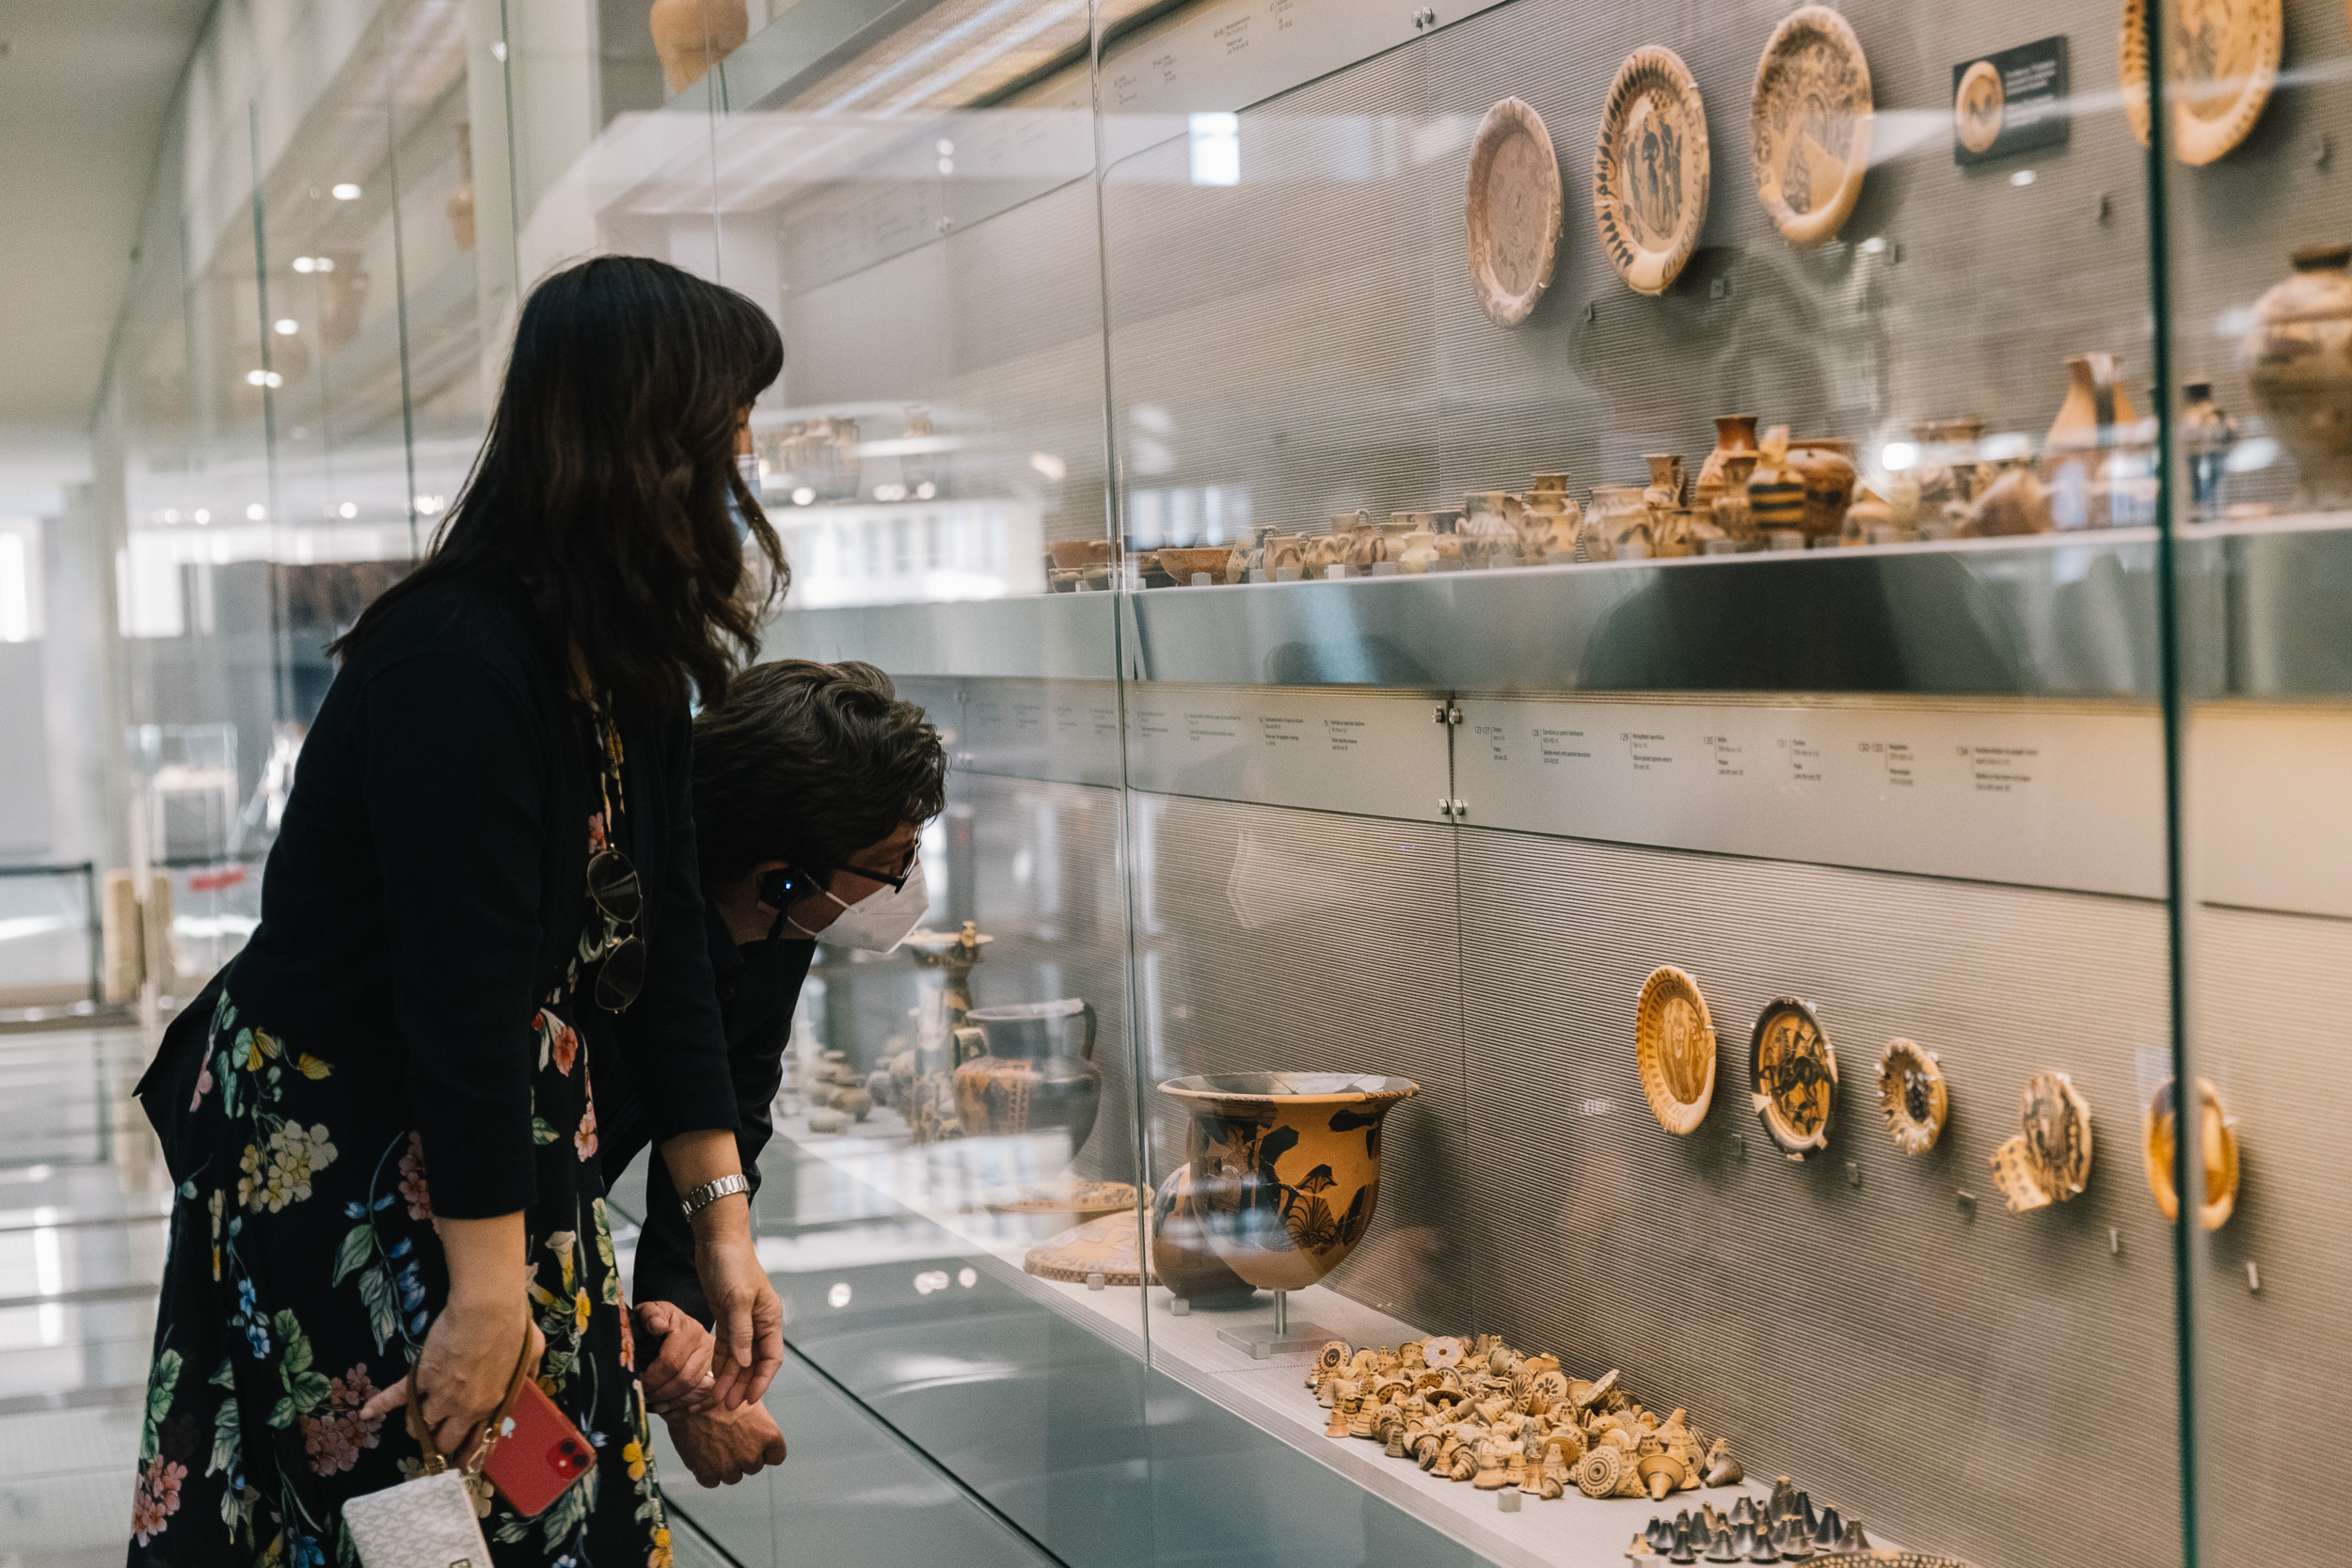 Περιήγηση στις συλλογές του Μουσείου Ακρόπολης για την αρχαία διατροφή - Φωτογραφία Πάρις Ταβιτιάν